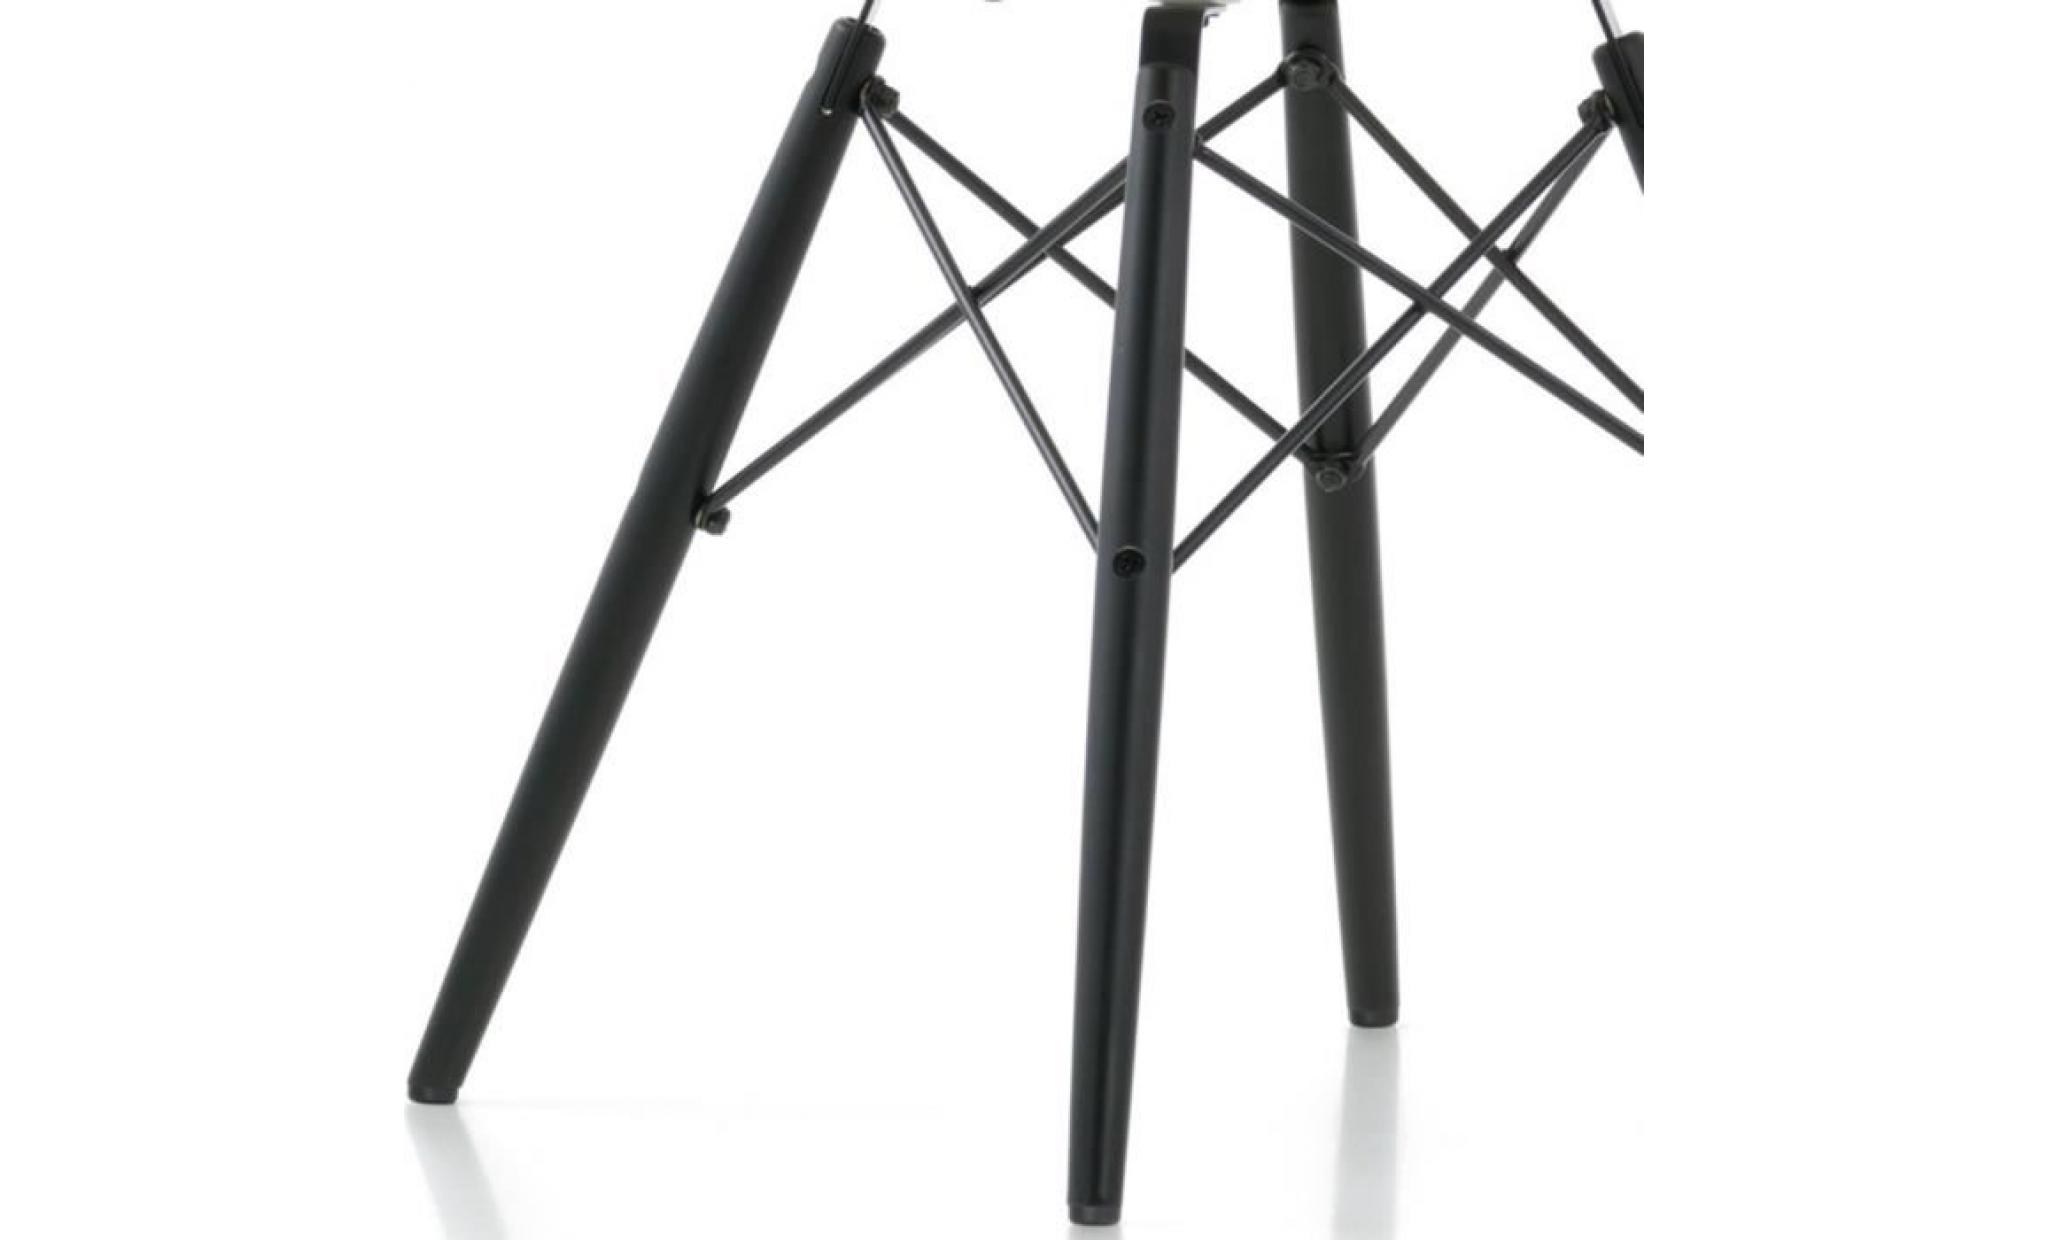 1 x fauteuil design  scandinave  orange  pieds: bois vernis noyer decopresto dp dawd or 1 pas cher